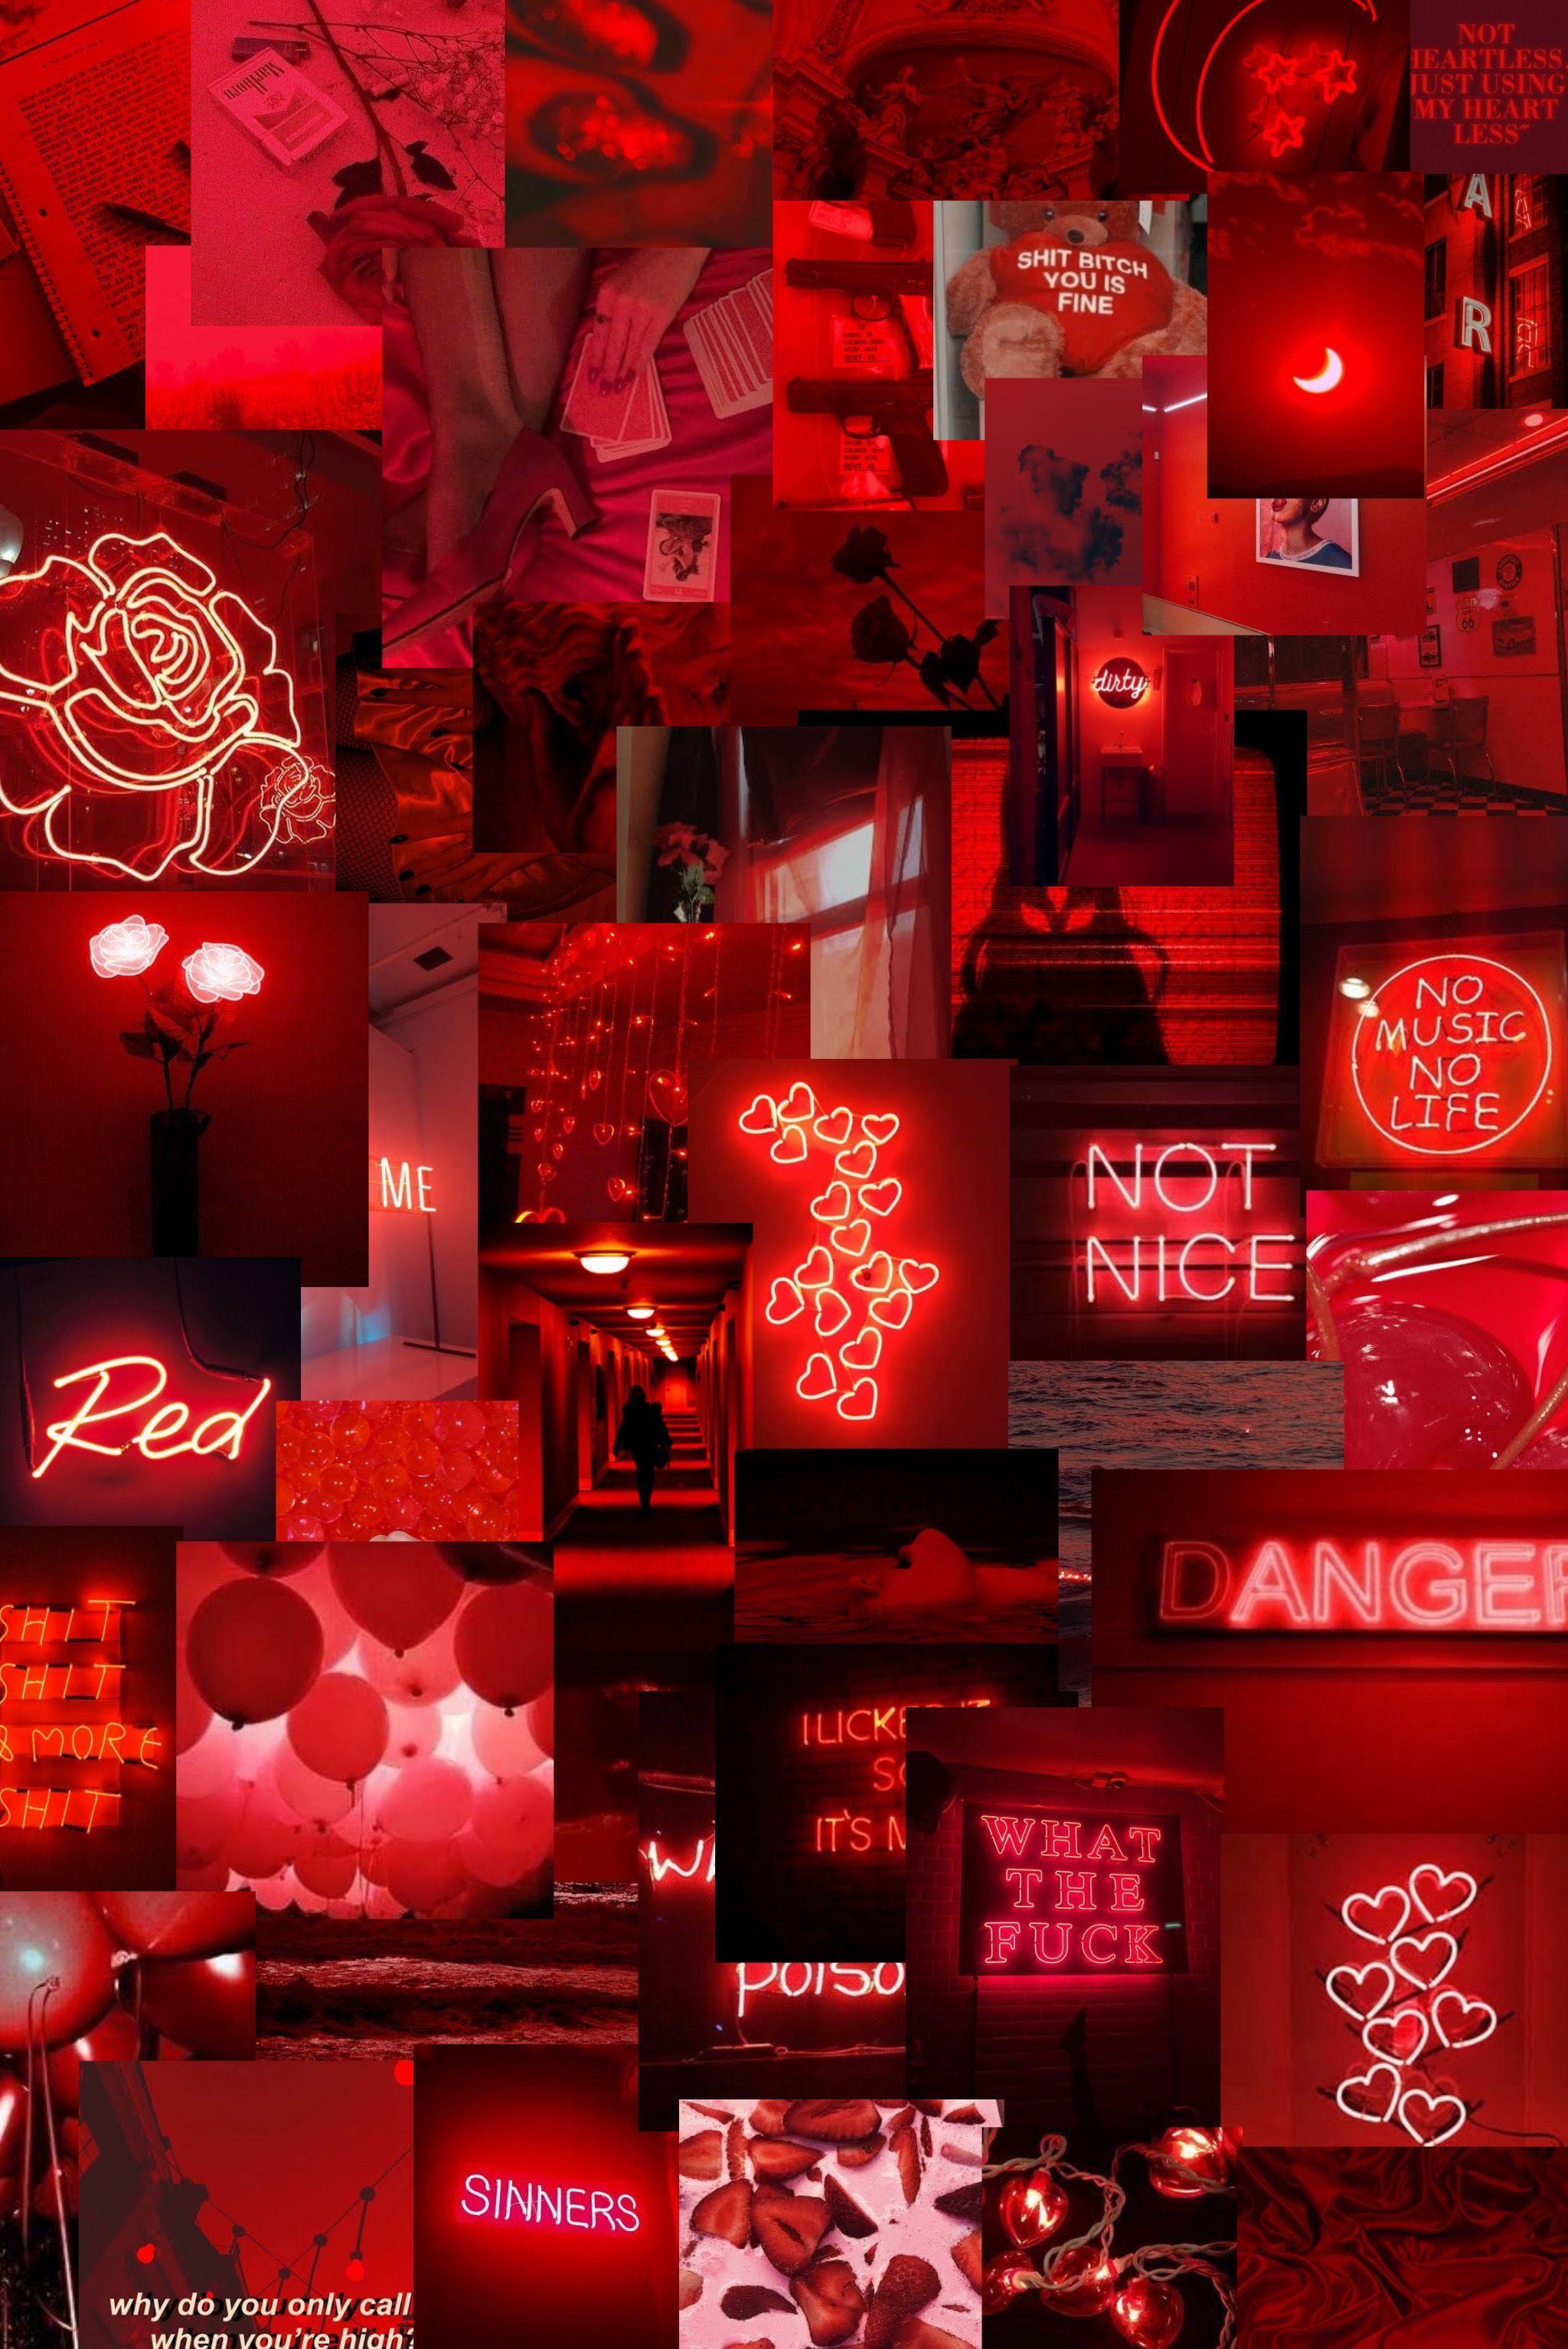 Light Red Aesthetic iPhone Wallpapers  PixelsTalkNet